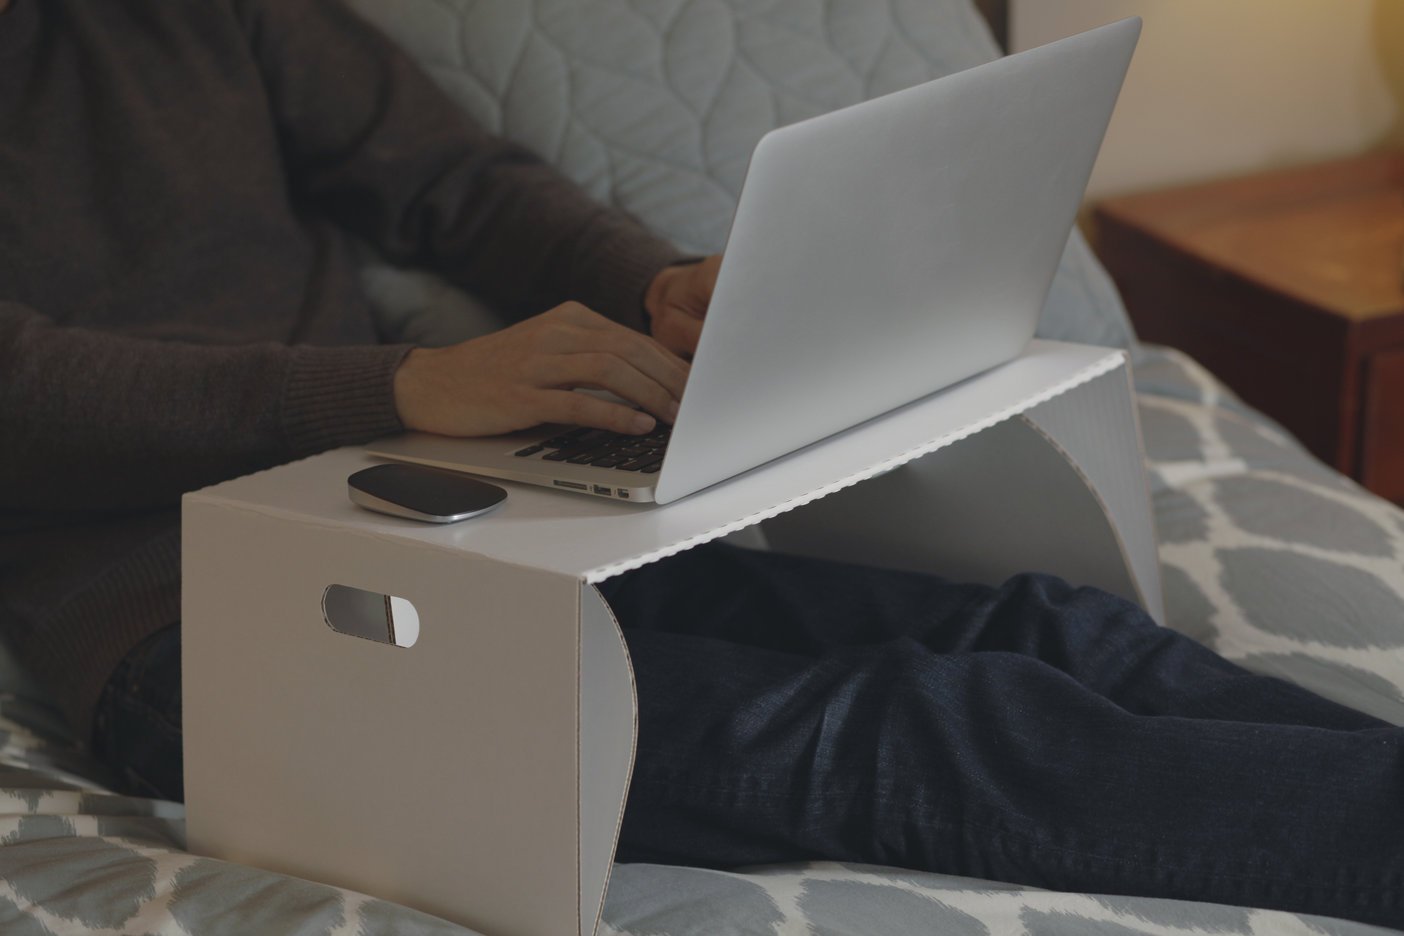 foldable lapdesk laptop desk portable